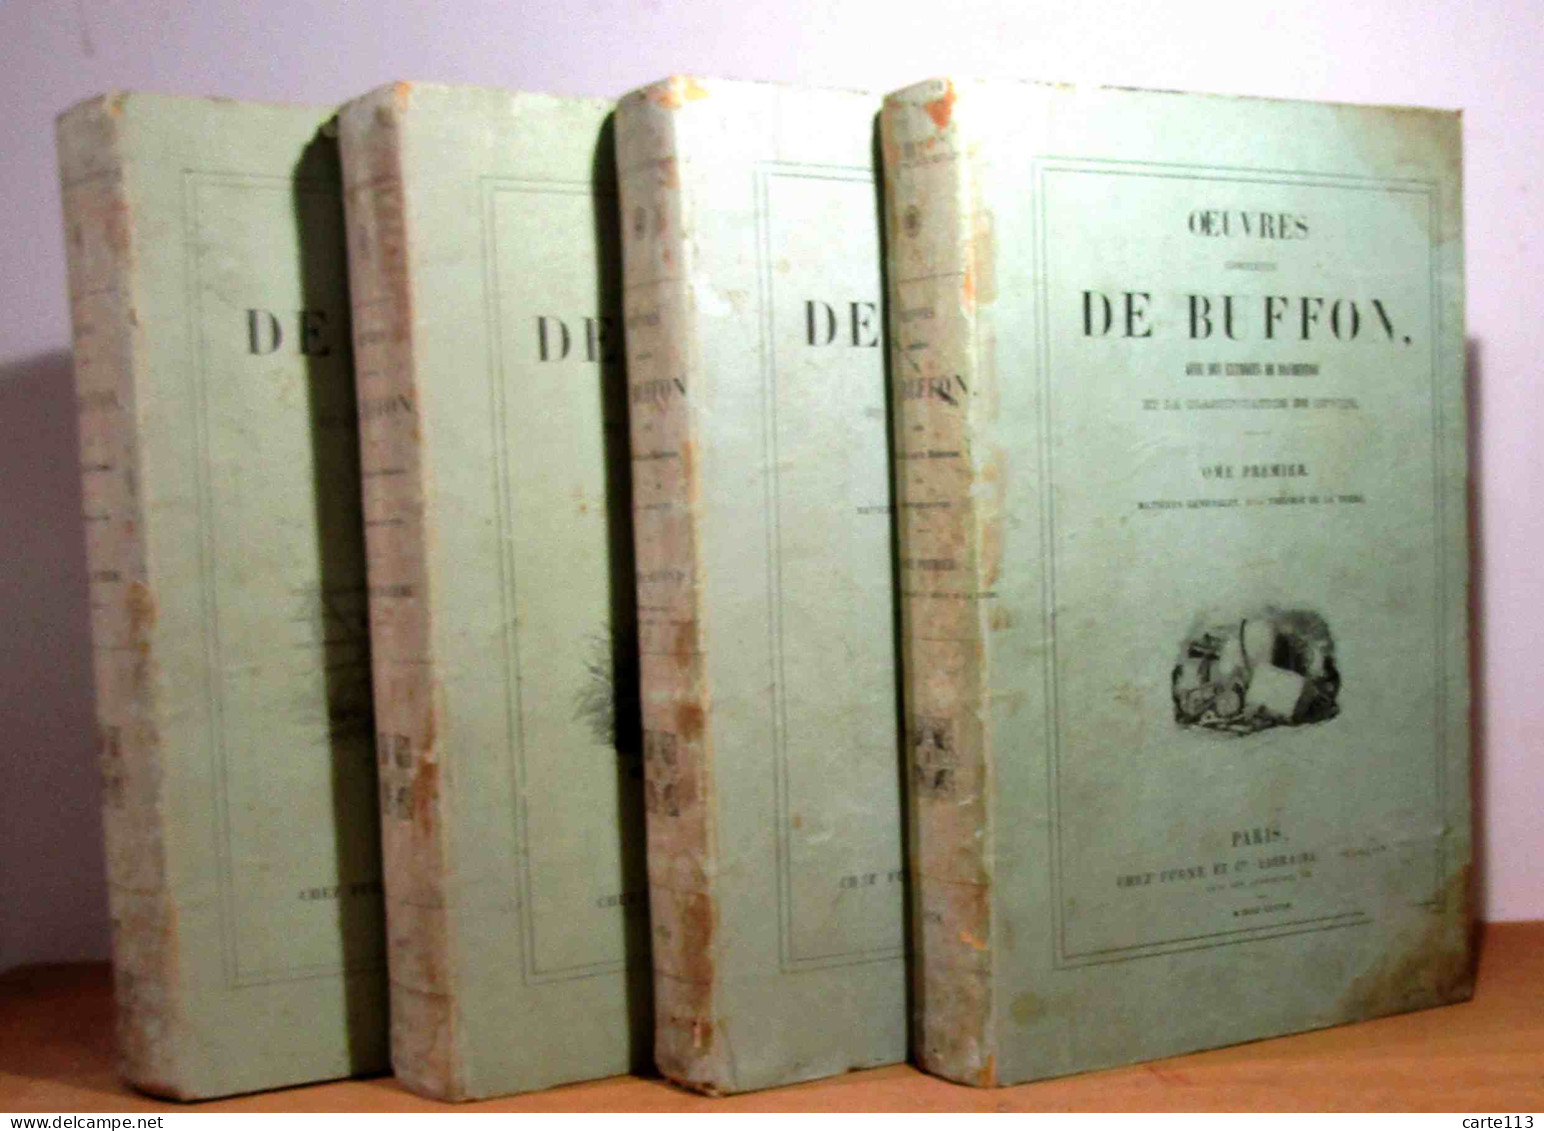 BUFFON Georges-Louis Leclerc, Comte De - OEUVRES COMPLETES DE BUFFON, AVEC DES EXTRAITS DE DAUBENTON ET LA CLA - 1801-1900